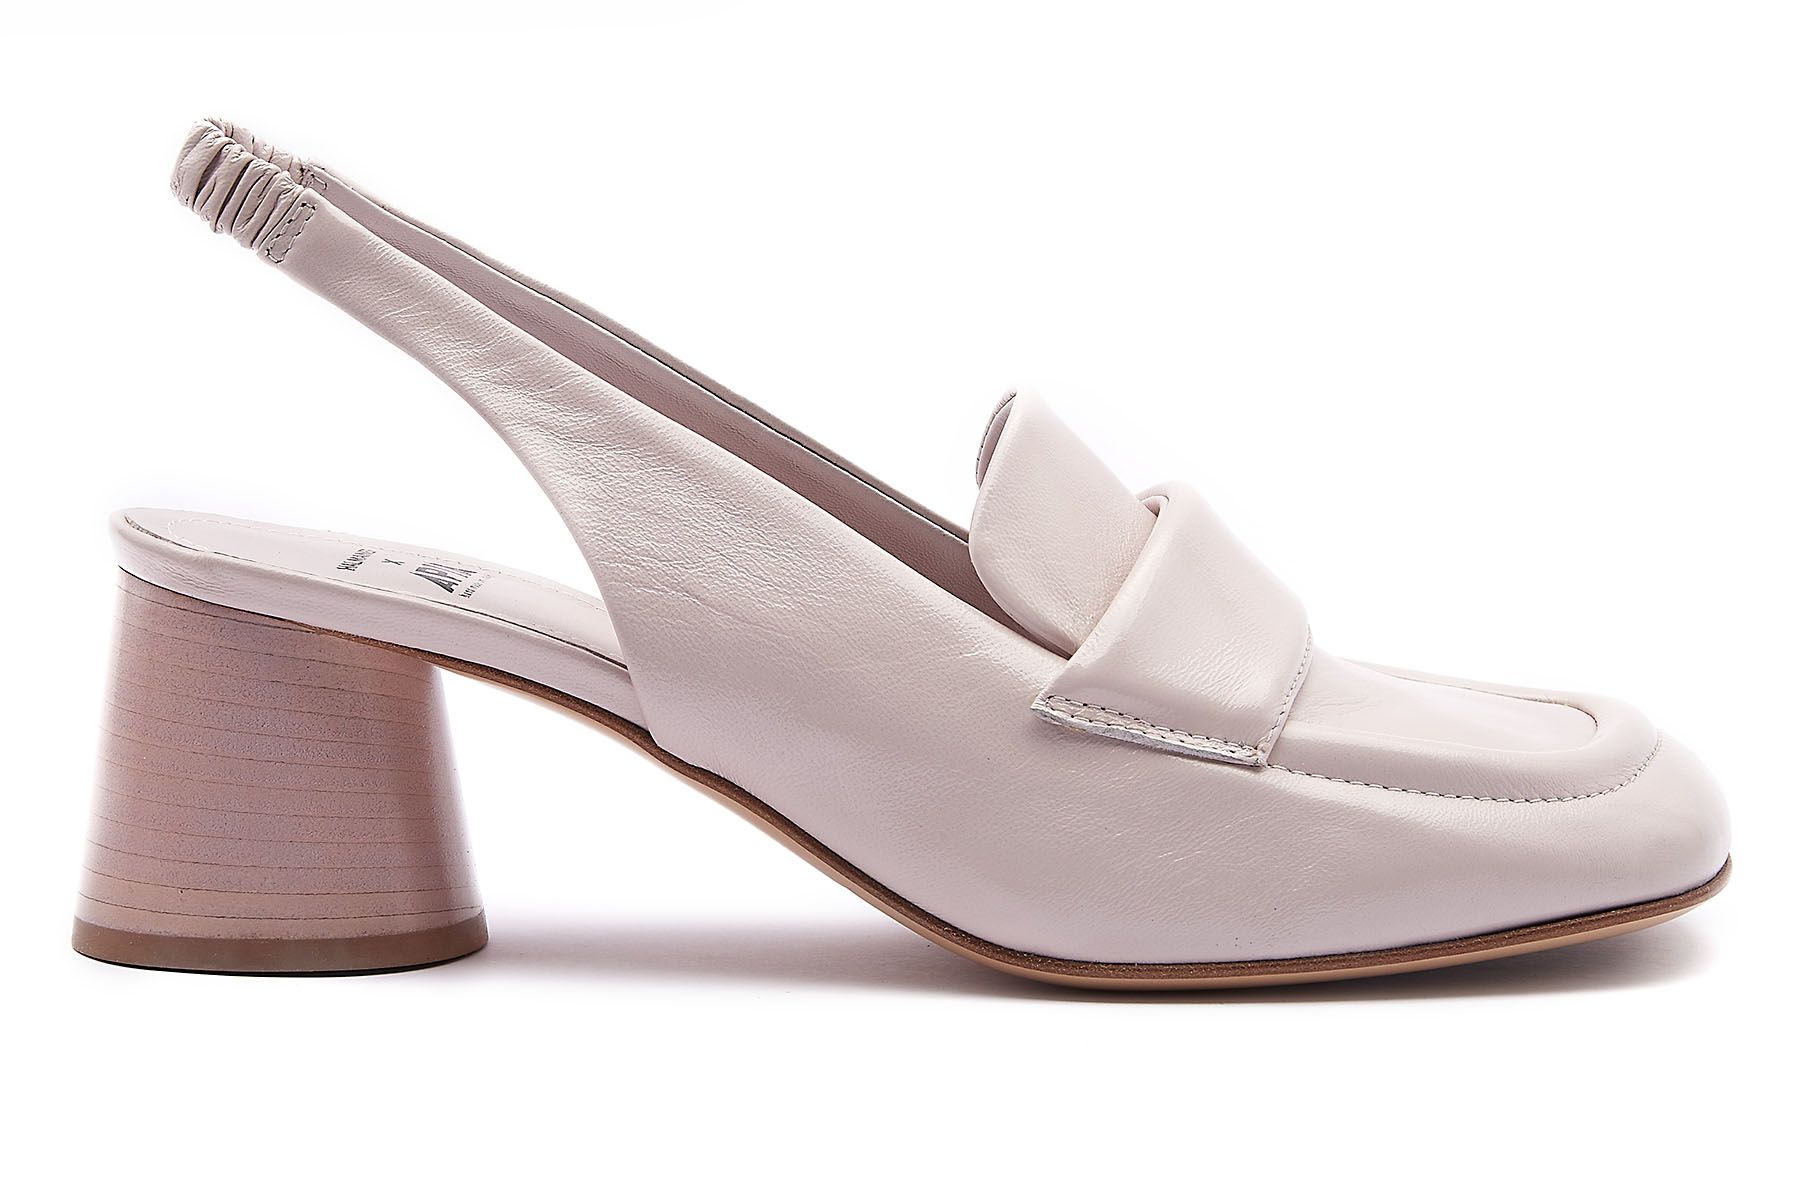 Buty ślubne damskie - szpilki, czółenka i sandały na wesele cieliste | Apia